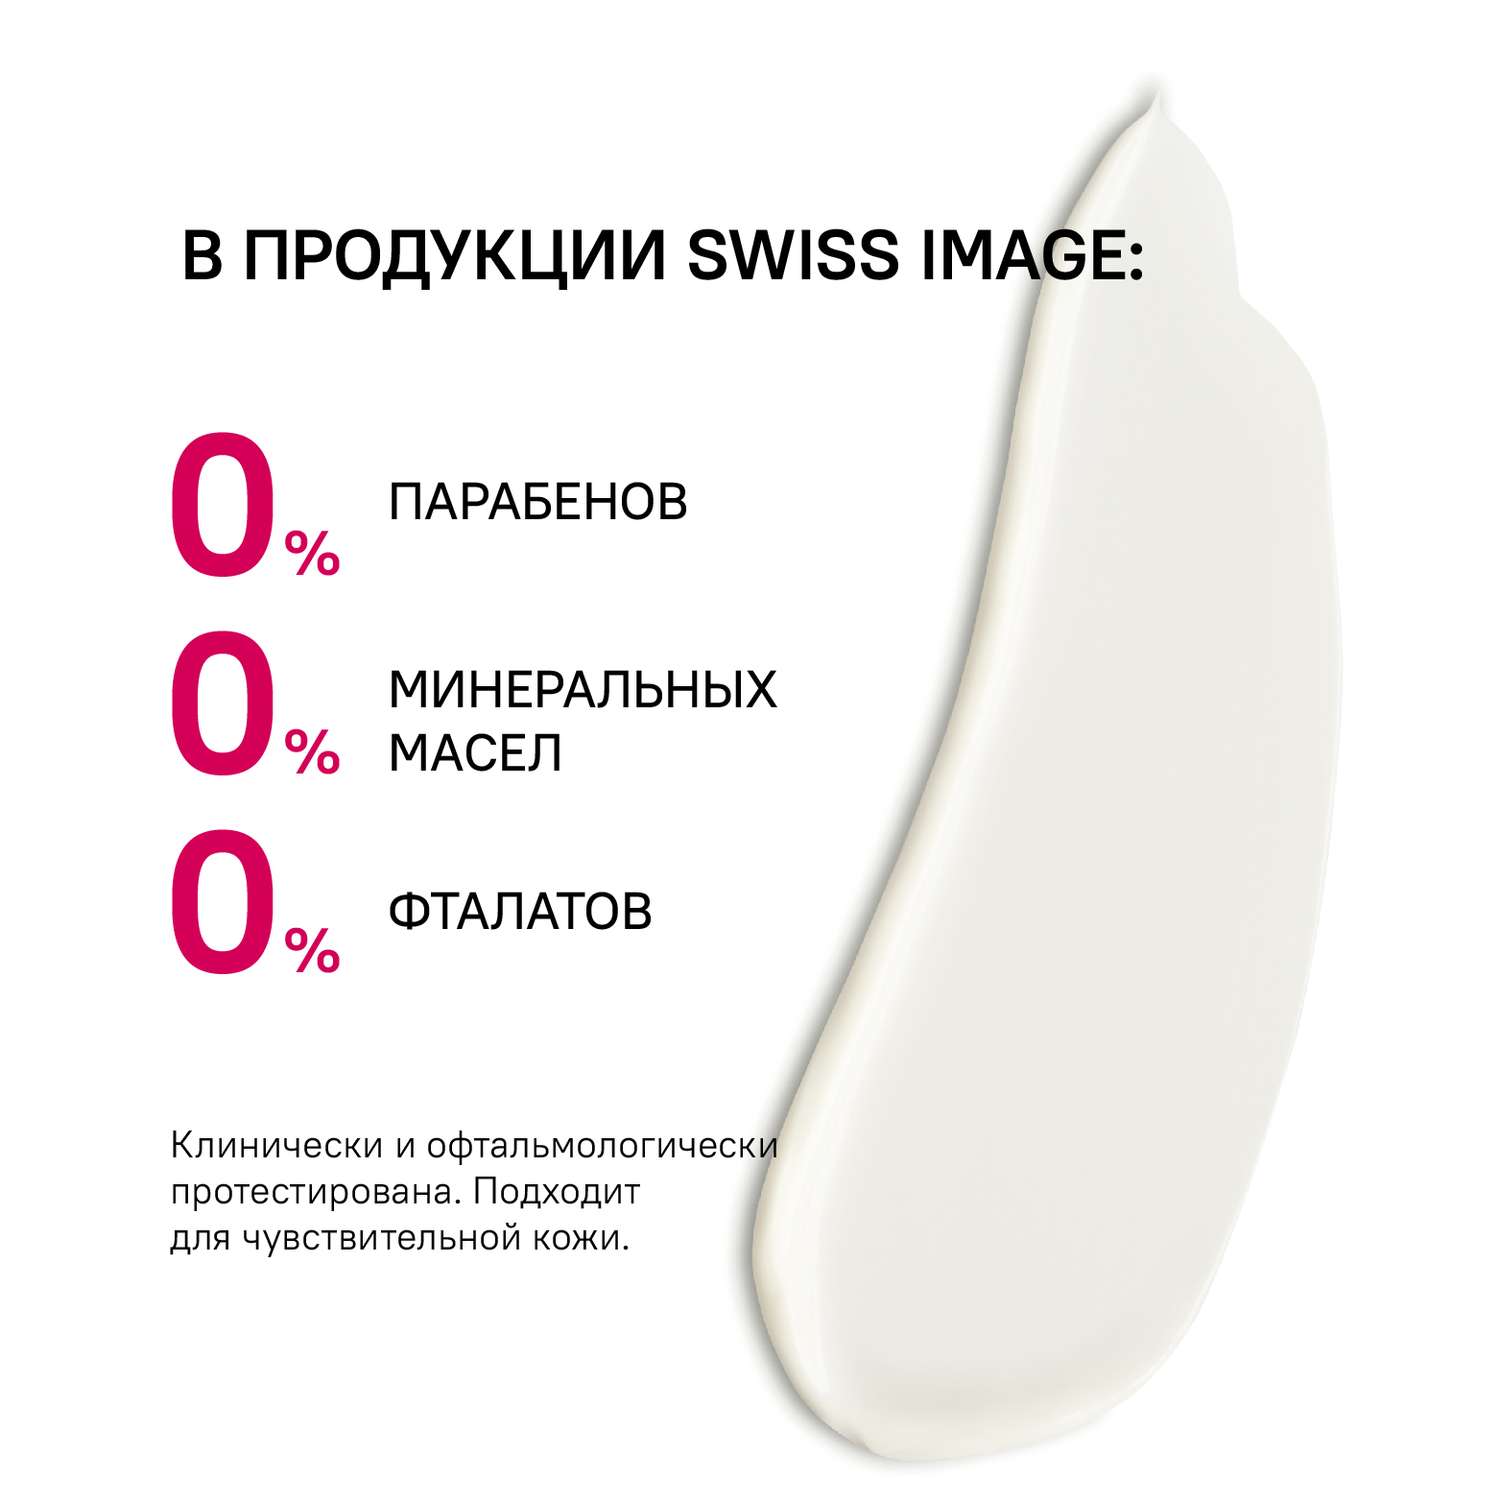 Дневной крем для лица Swiss image против глубоких морщин 46+ Антивозрастной уход 50 мл - фото 9